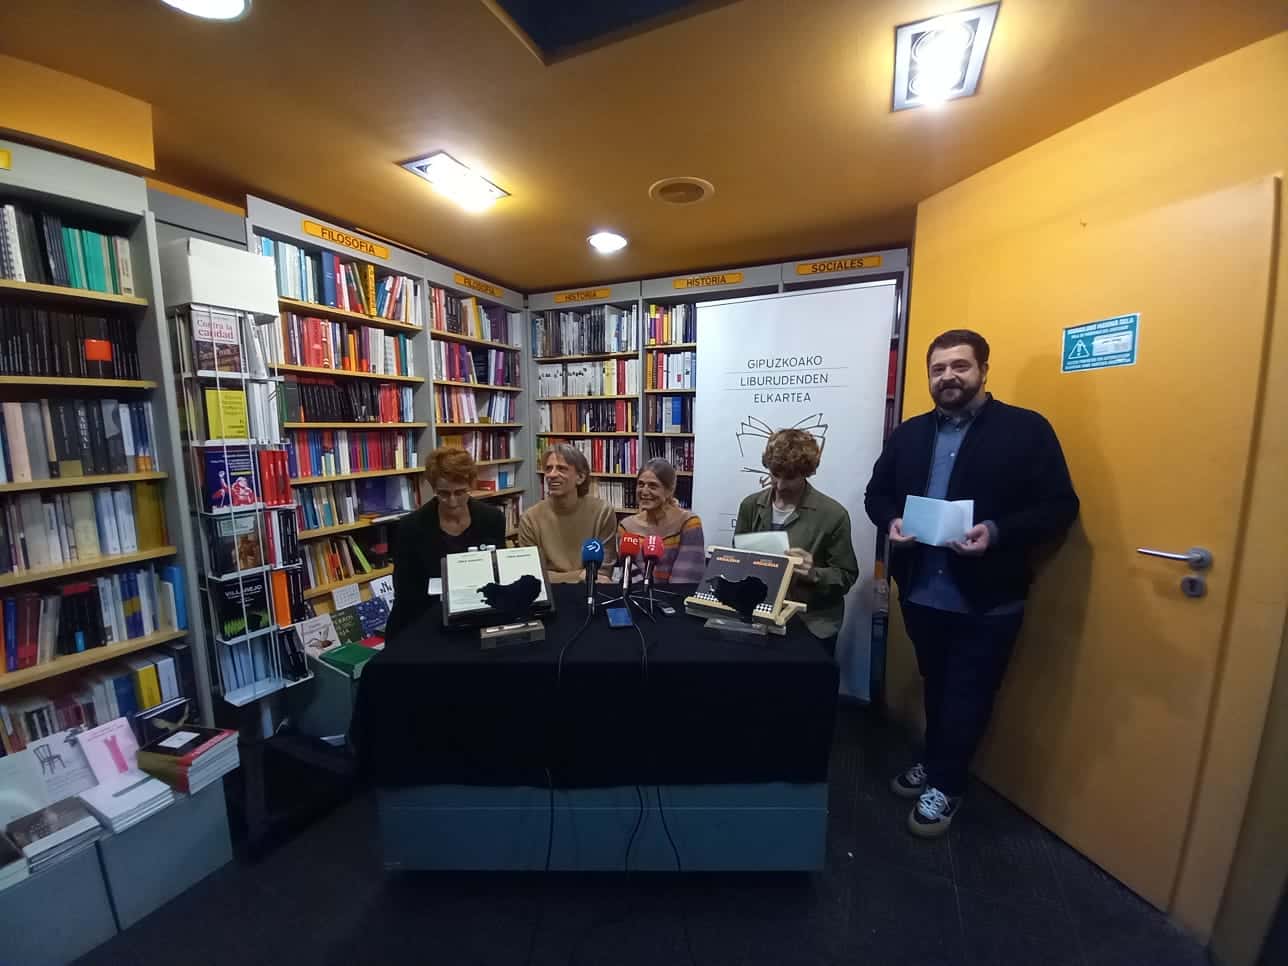 6ee8ac62 f6d8 4b20 bf6b f5a51bee39bd - Juan Tallón y Miriam Luki, muy "honrados", reciben sus Premios Euskadi de Plata de manos de los libreros